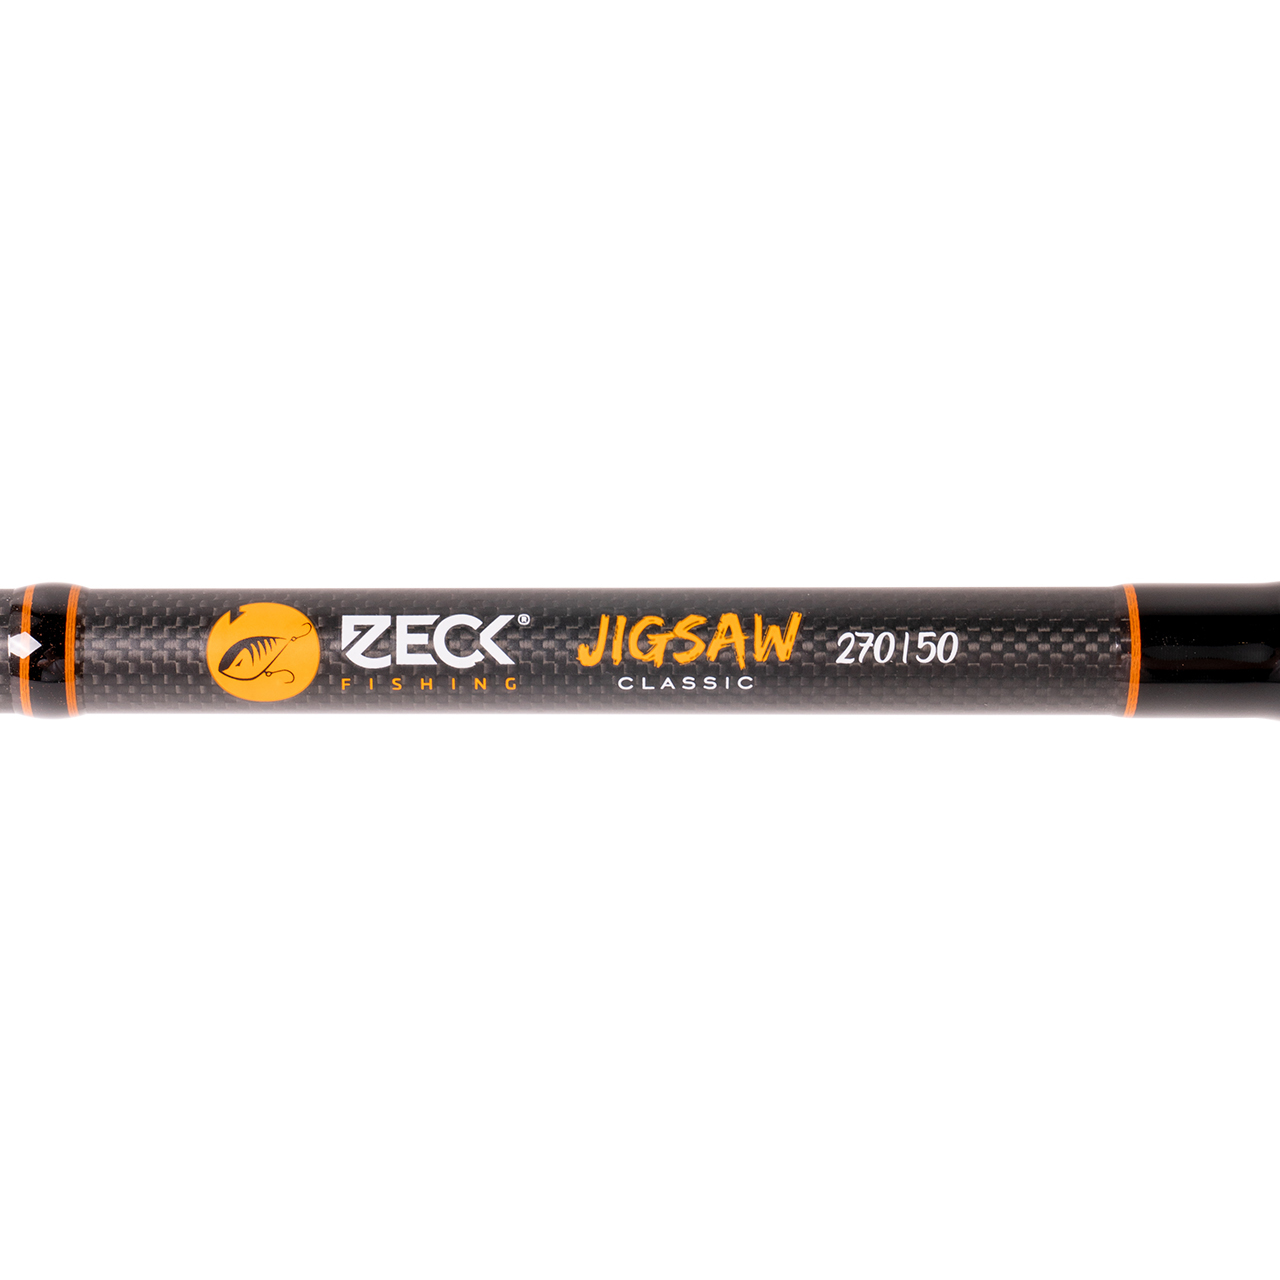 ZECK JIGSAW CLASSIC 270/50